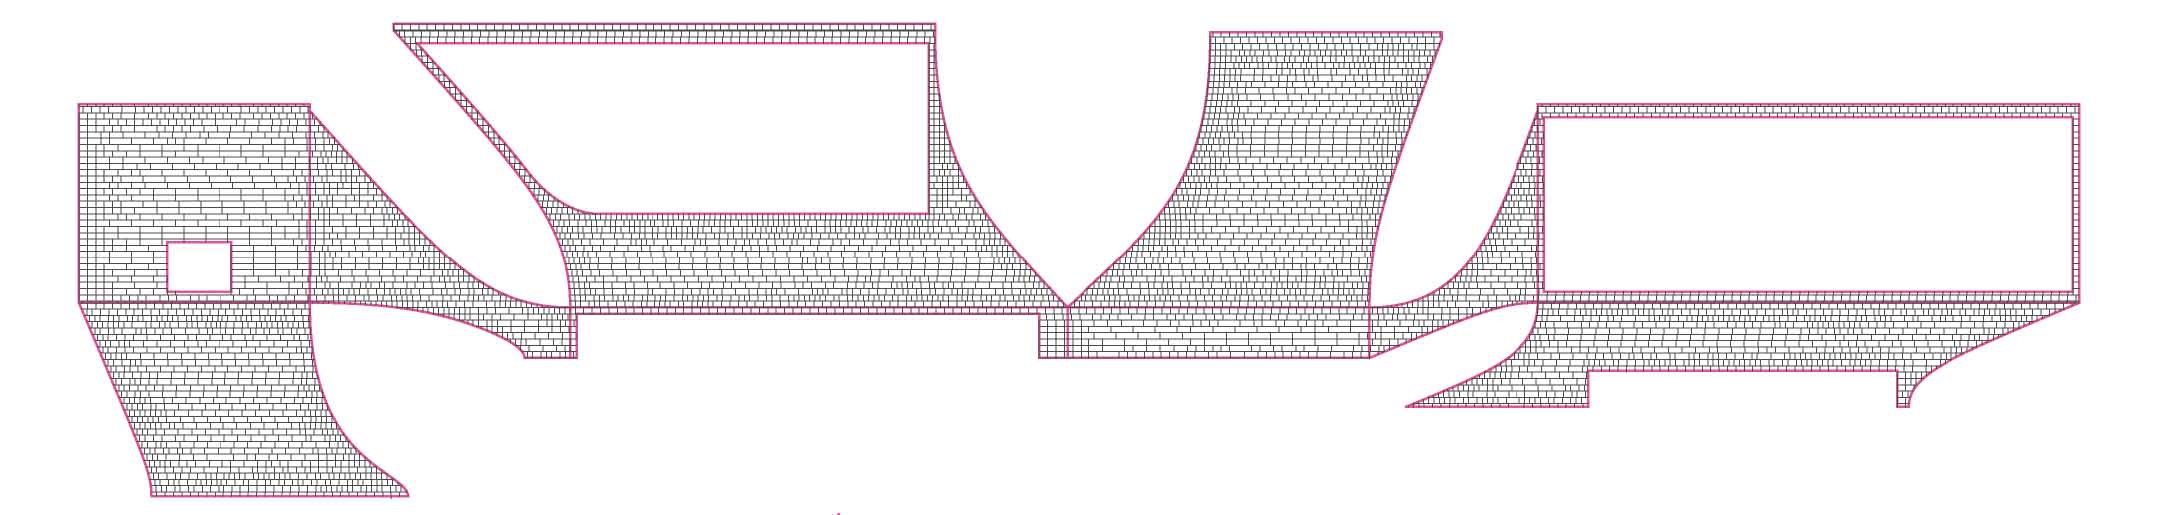 10XX_Huainan_Diagram_facadeexpansion1